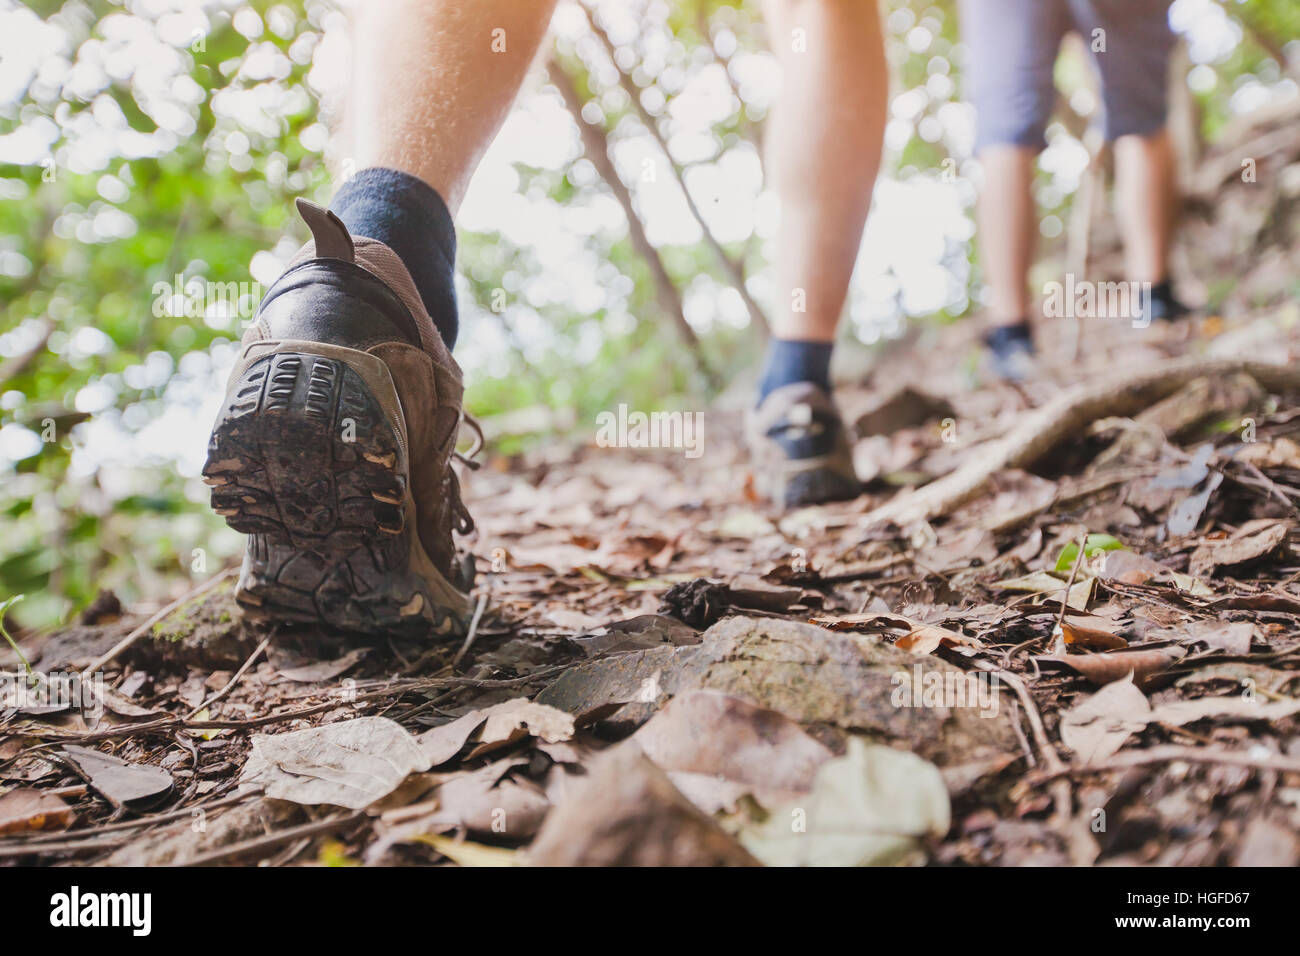 Randonnée dans la jungle, groupe de randonneurs backpackers à marcher ensemble à l'extérieur dans la forêt, près des pieds, des chaussures de randonnée Banque D'Images